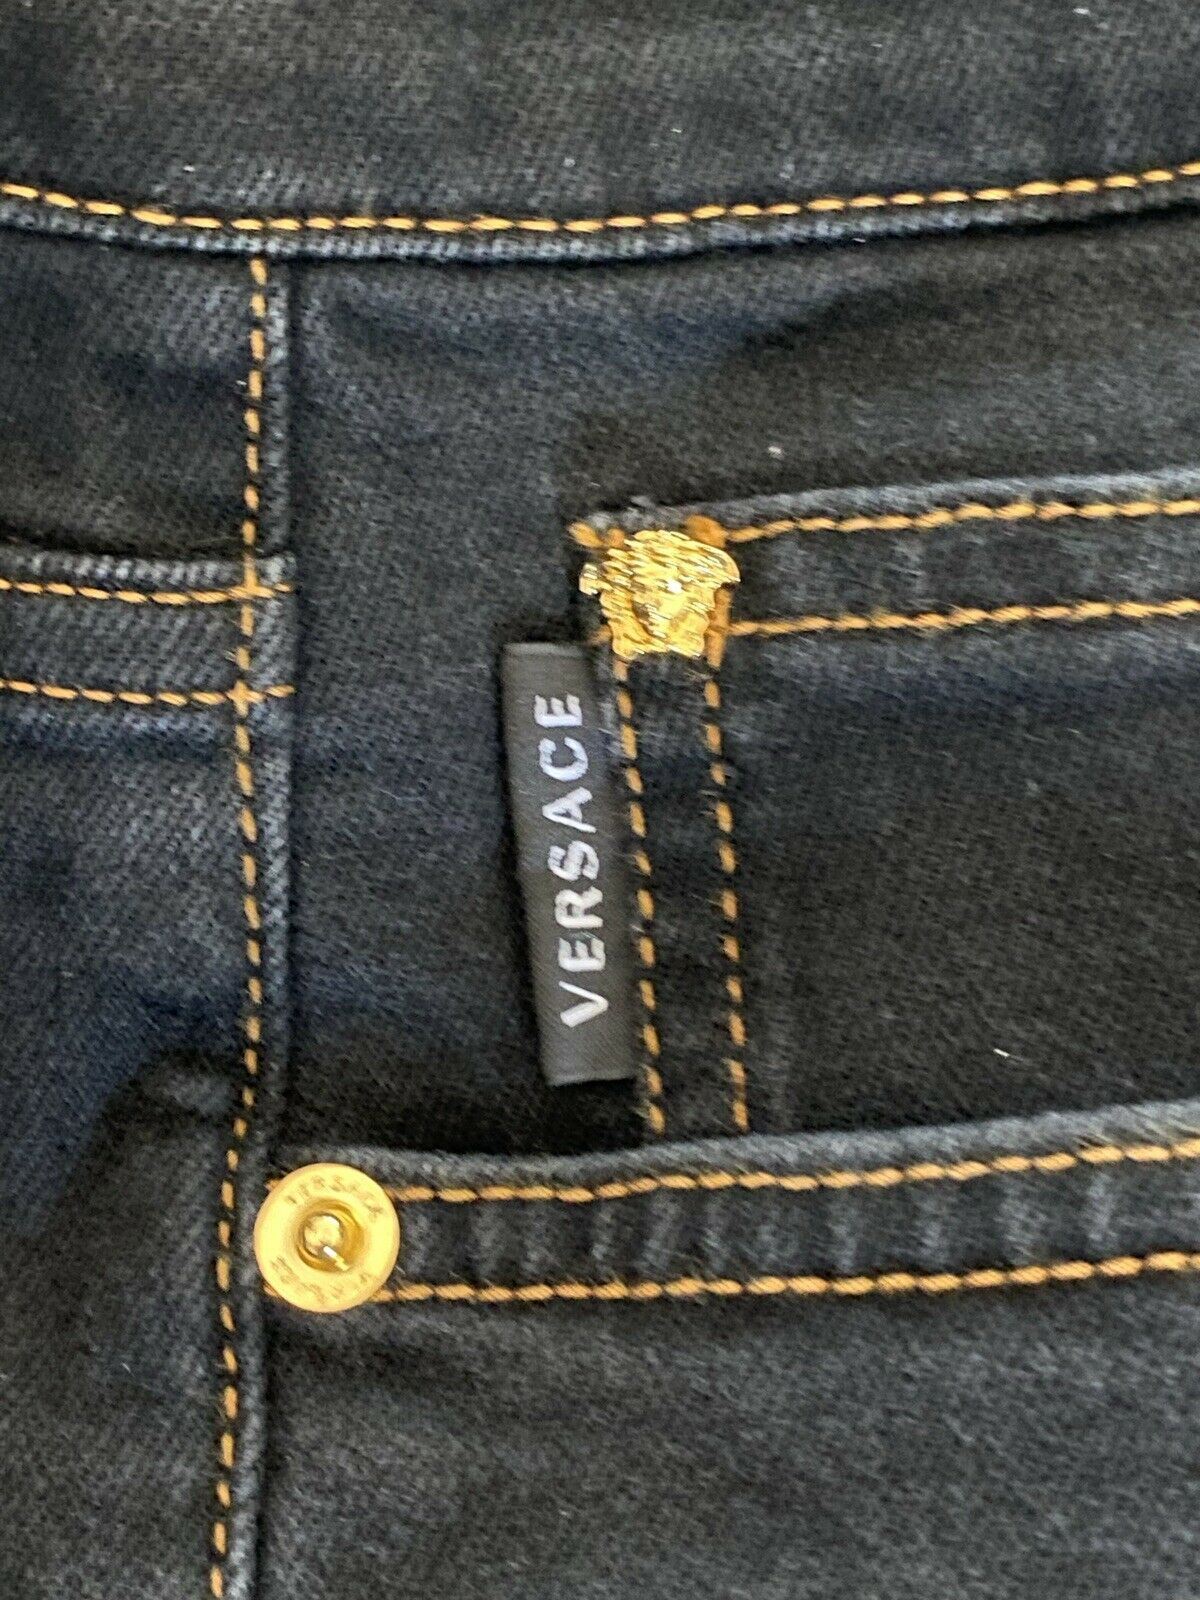 Мужские черные джинсы Versace NWT, размер 33, 450 долларов США, A84998S, сделано в Италии